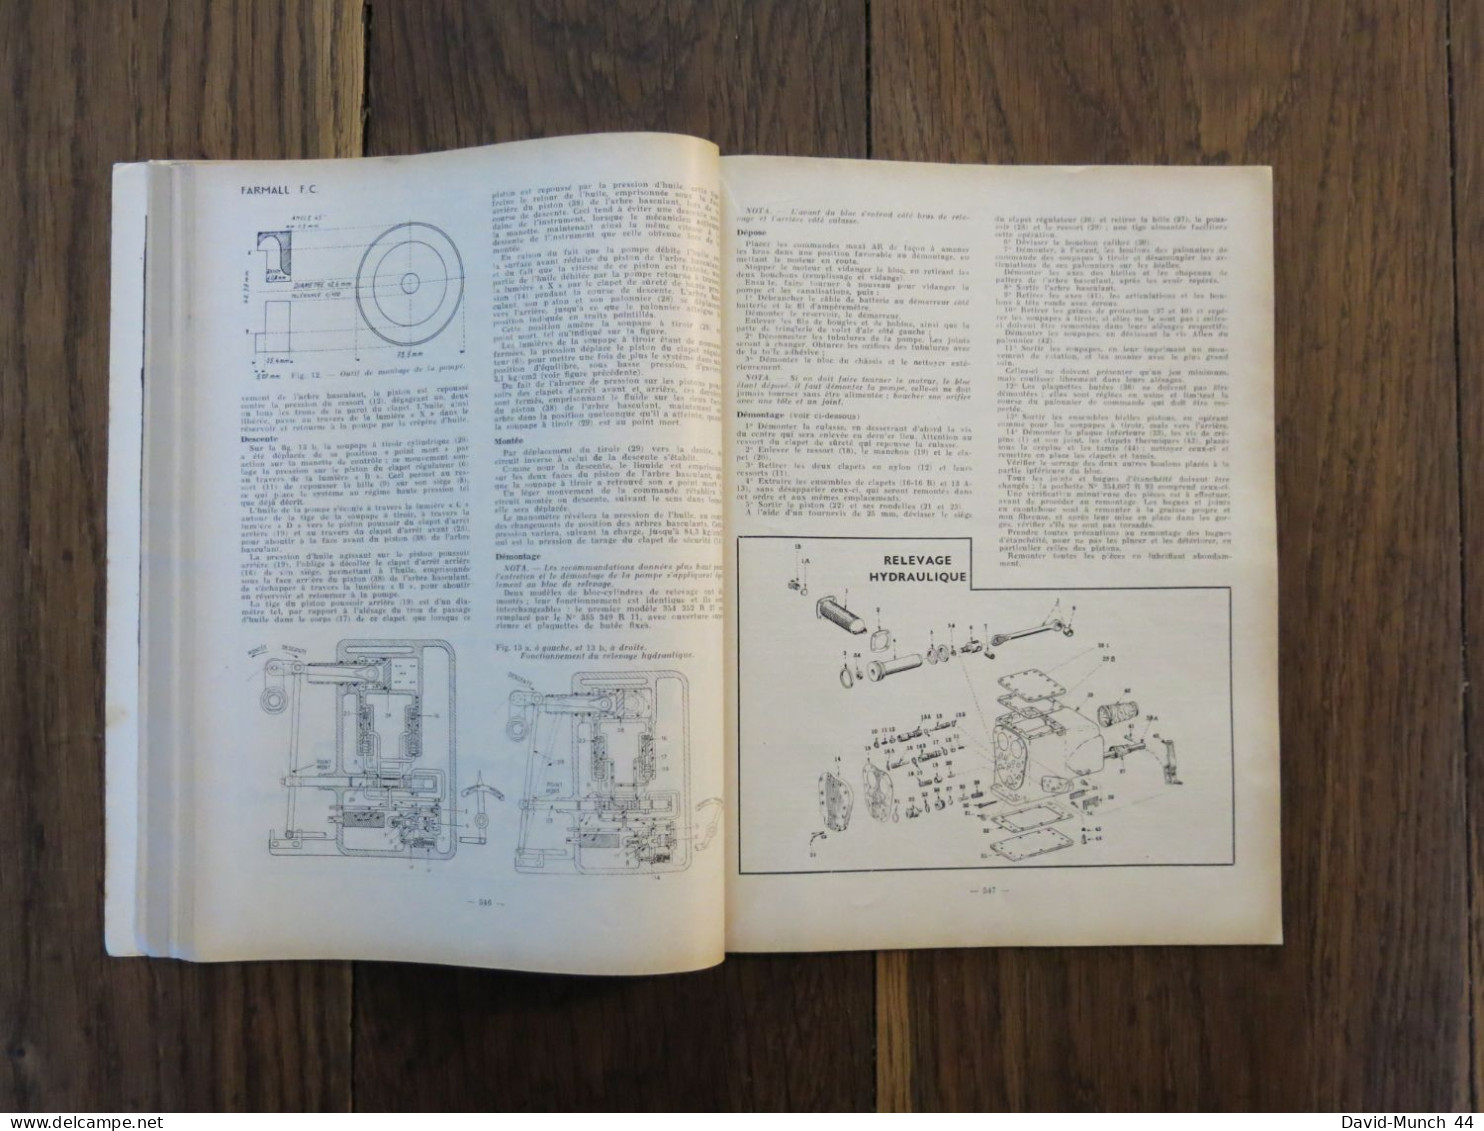 Revue technique Automobile # 99. Juillet 1954